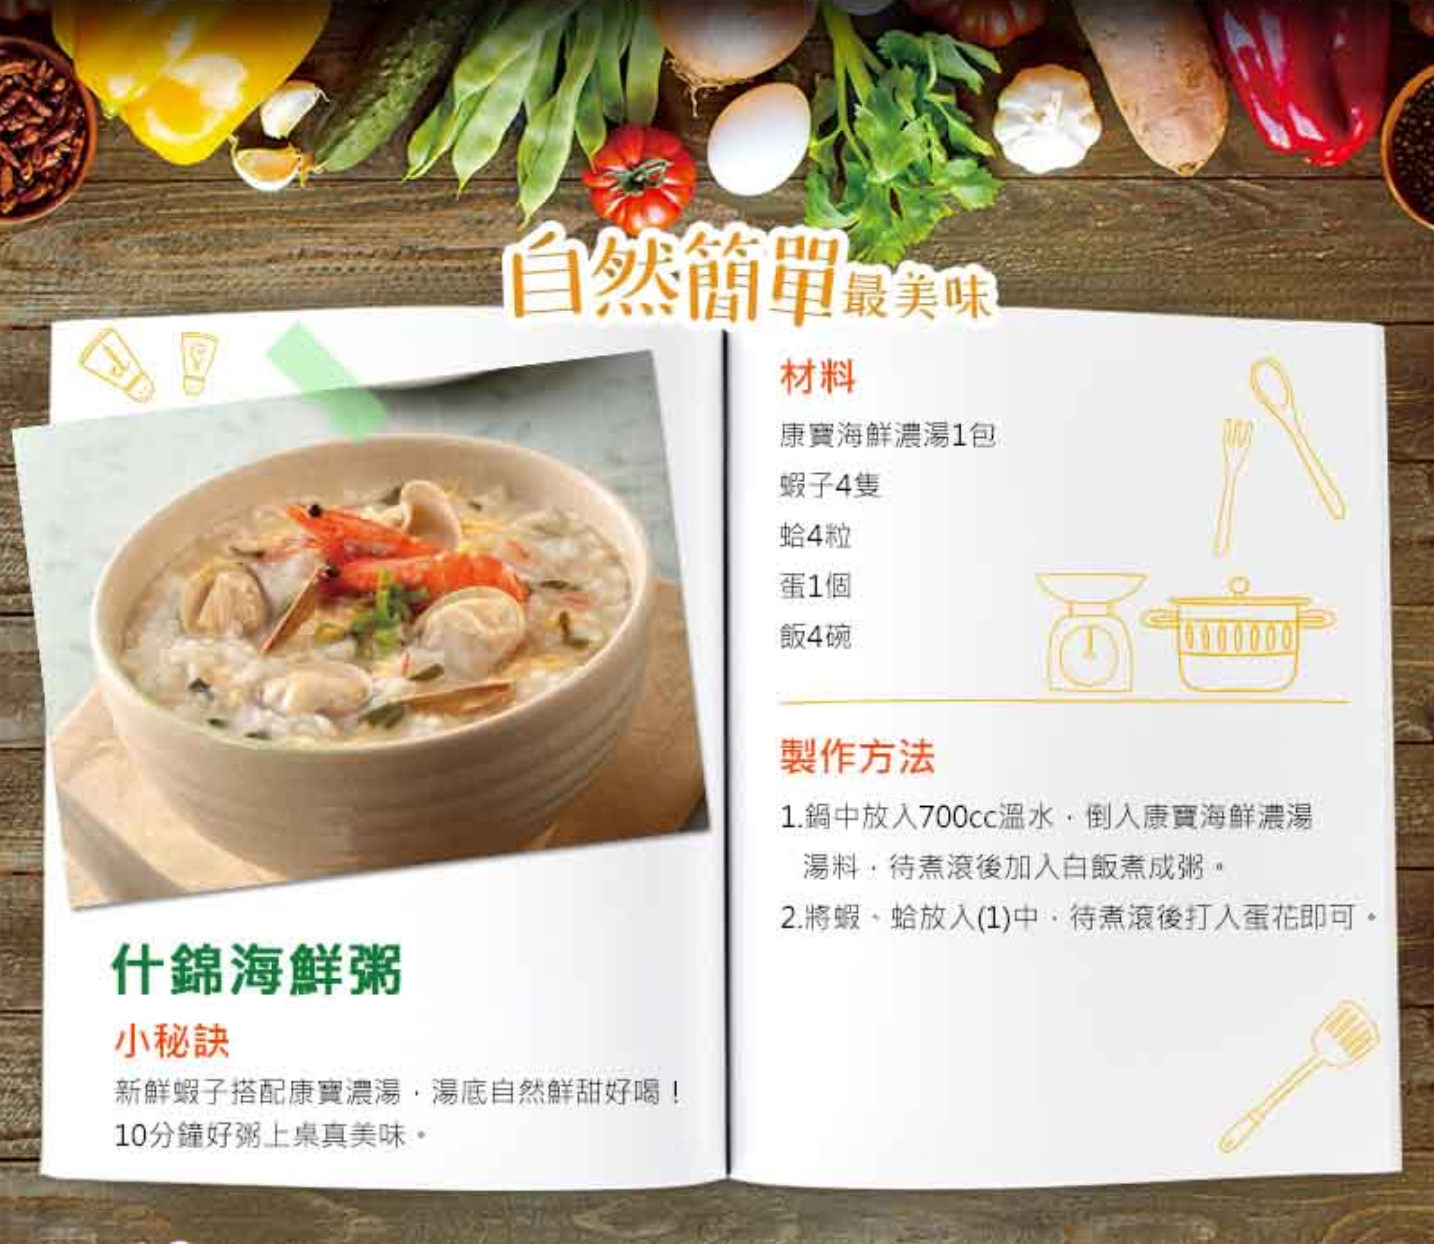 台湾クノールスープ シーフード 康寶濃湯 海鮮總匯｜2パック